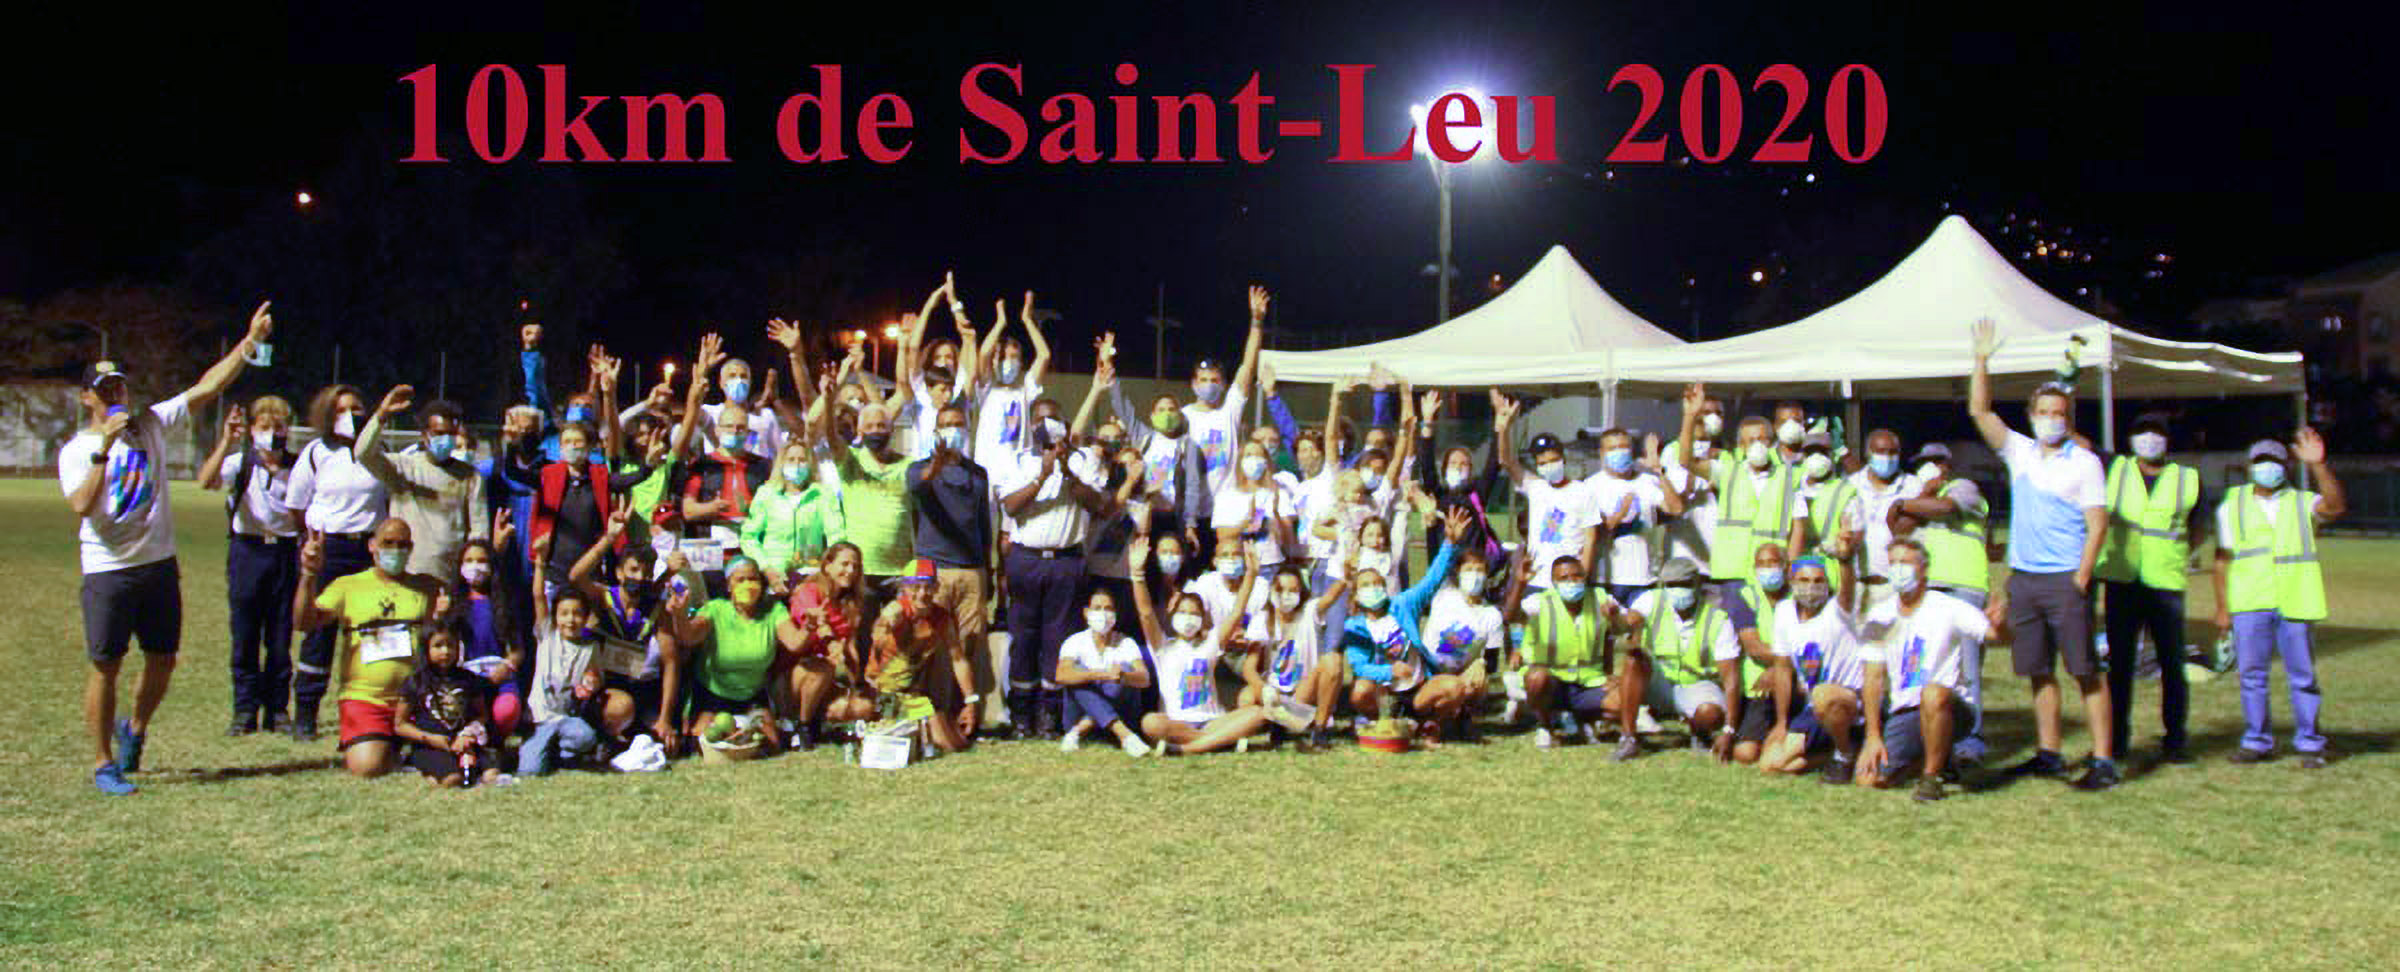 10 km de Saint-Leu 2020: une édition record